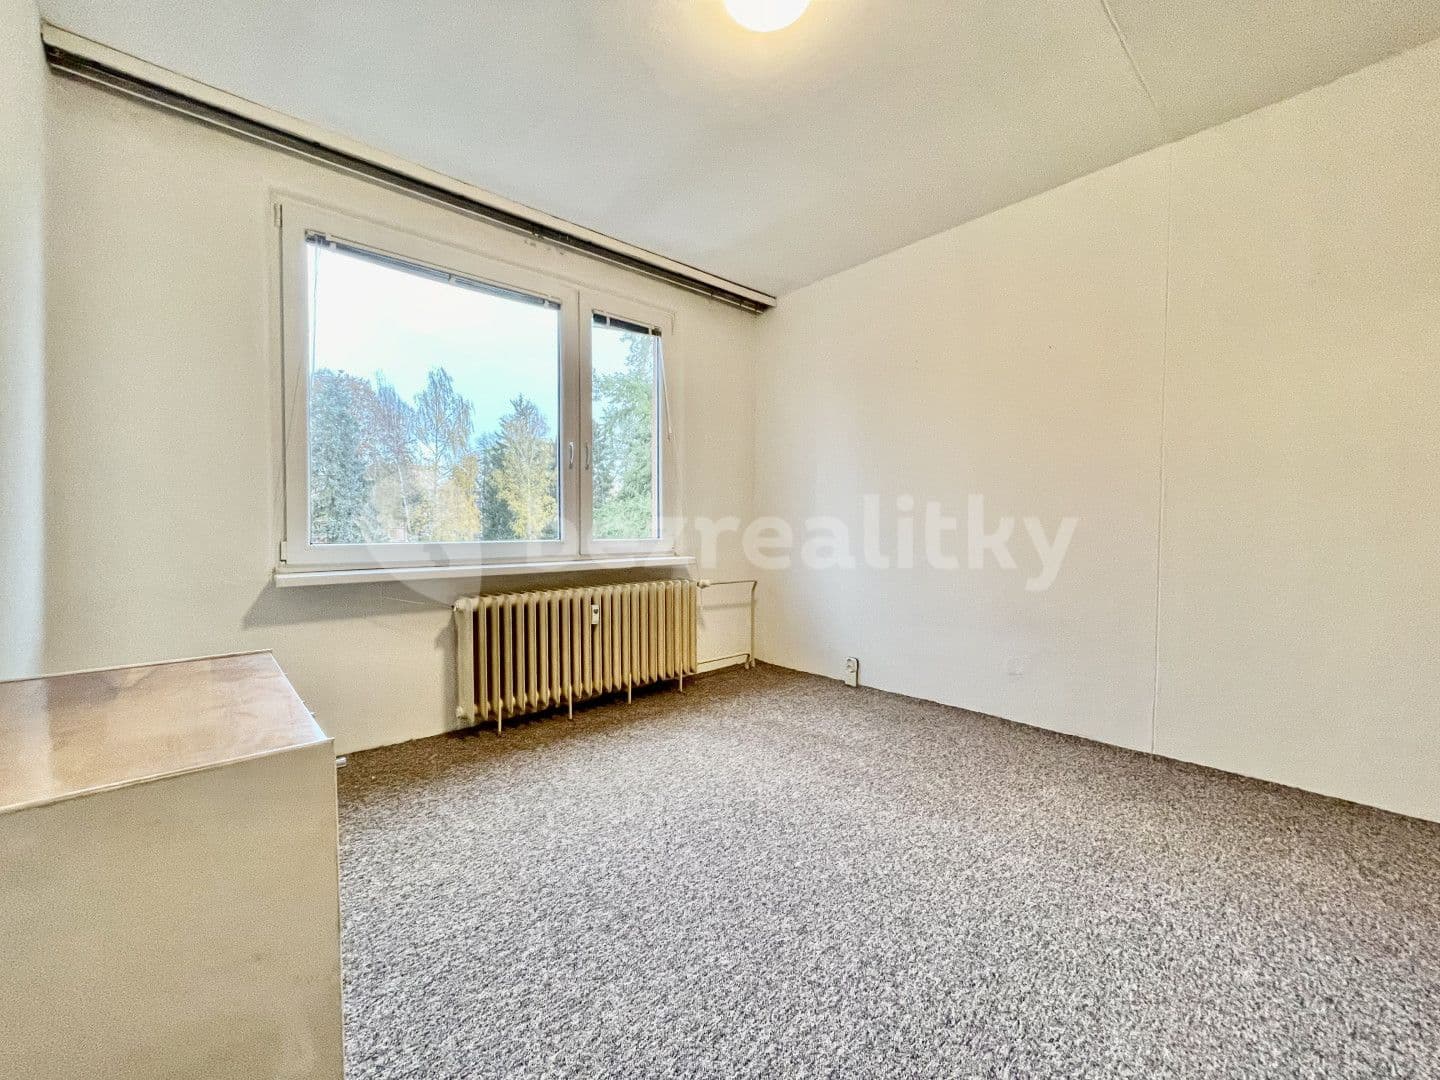 2 bedroom flat for sale, 61 m², Sázavská, Světlá nad Sázavou, Vysočina Region